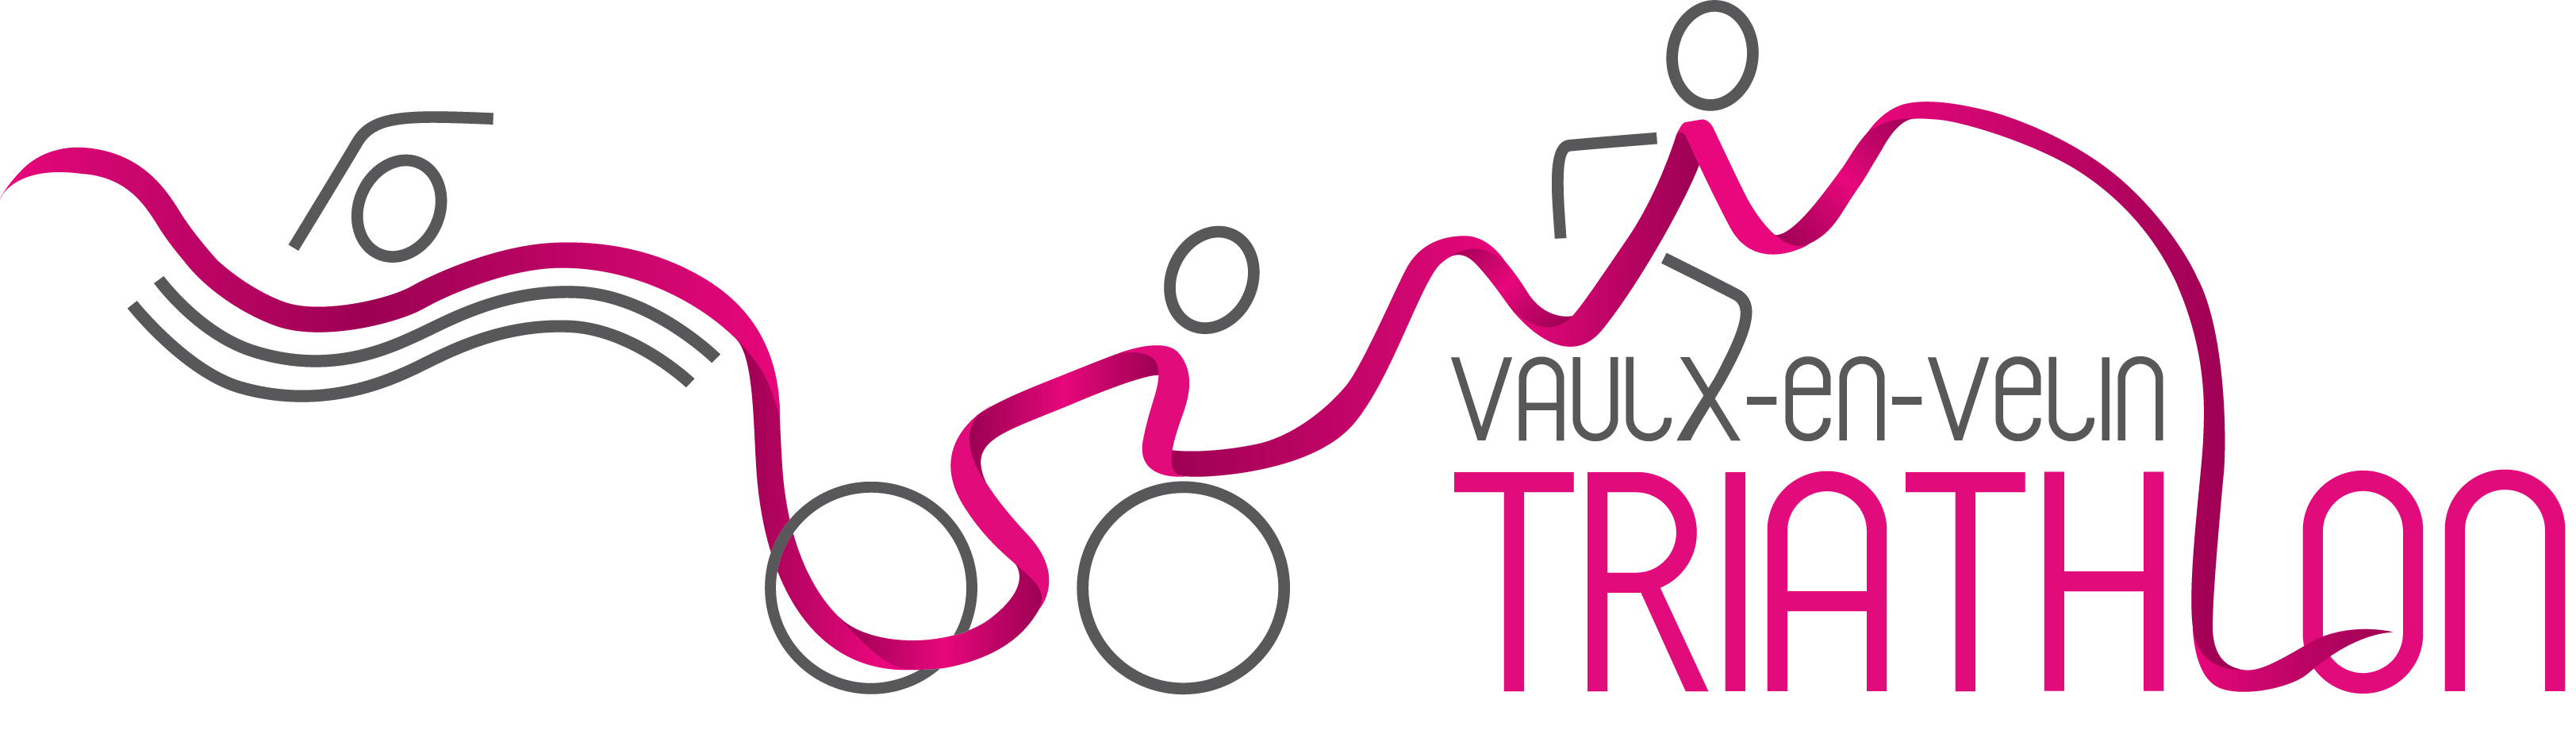 29ème Triathlon de Vaulx-en-Velin